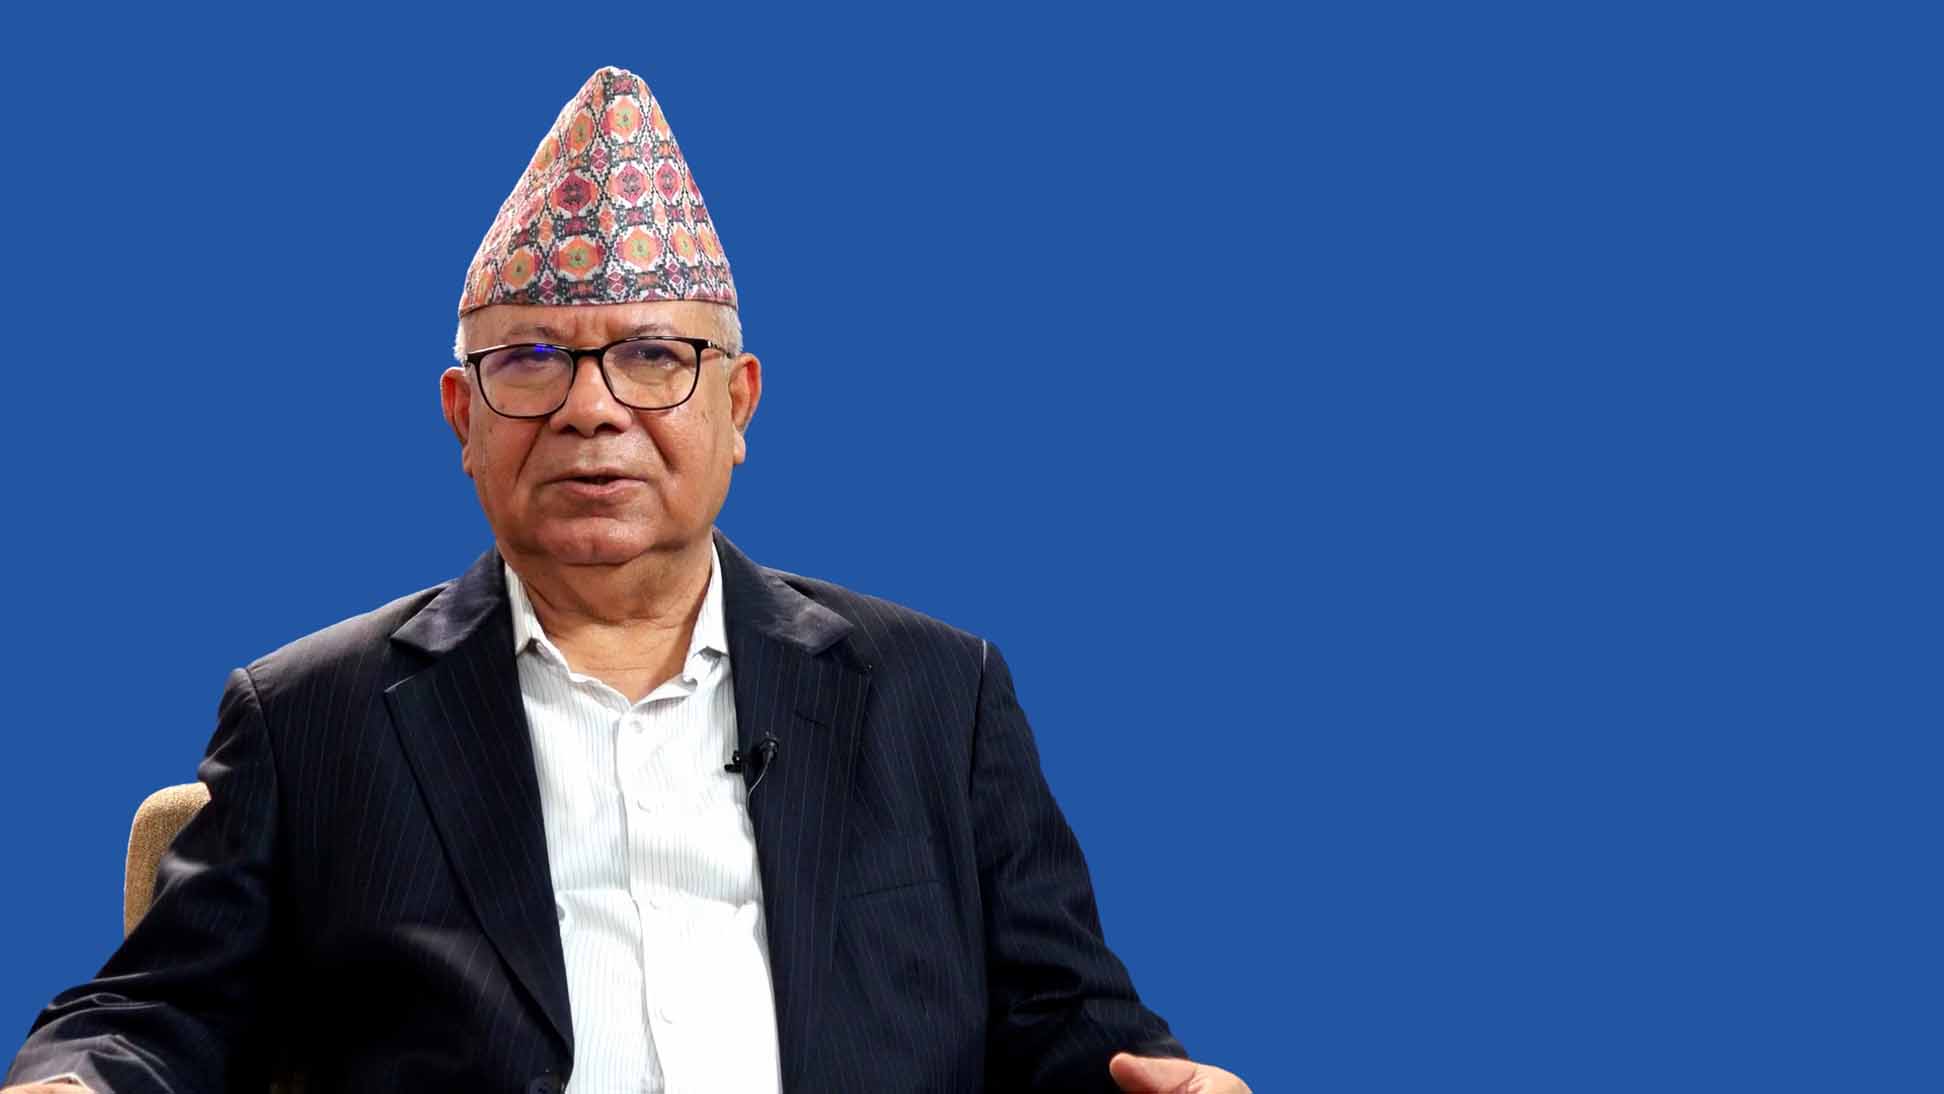 वामपन्थी शक्तिहरु मिल्नुको विकल्प छैन: अध्यक्ष नेपाल